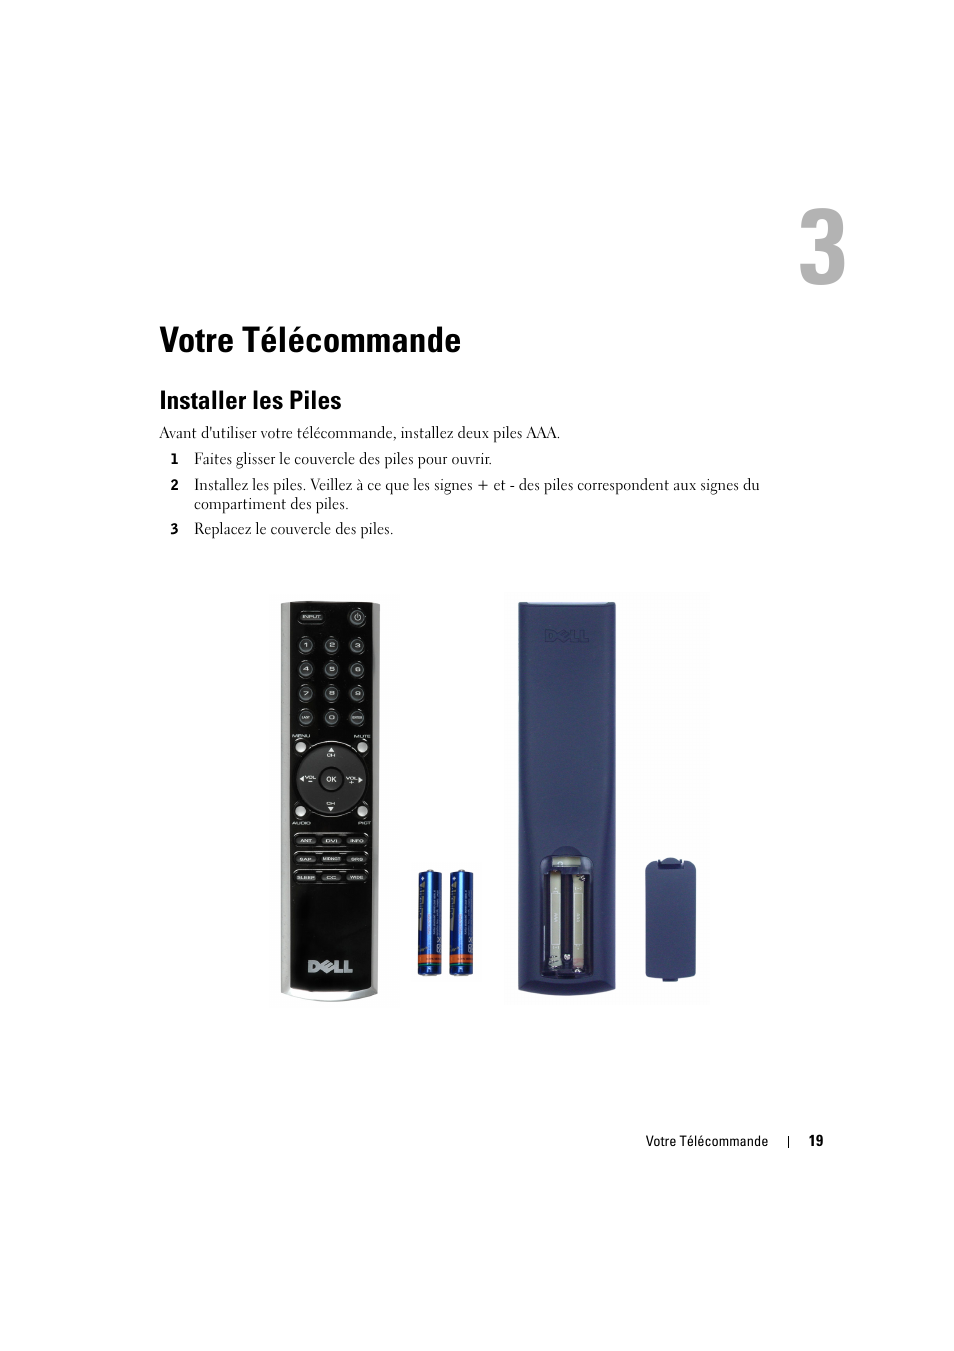 Votre télécommande, Installer les piles | Dell LCD TV W2606C Manuel d'utilisation | Page 19 / 60